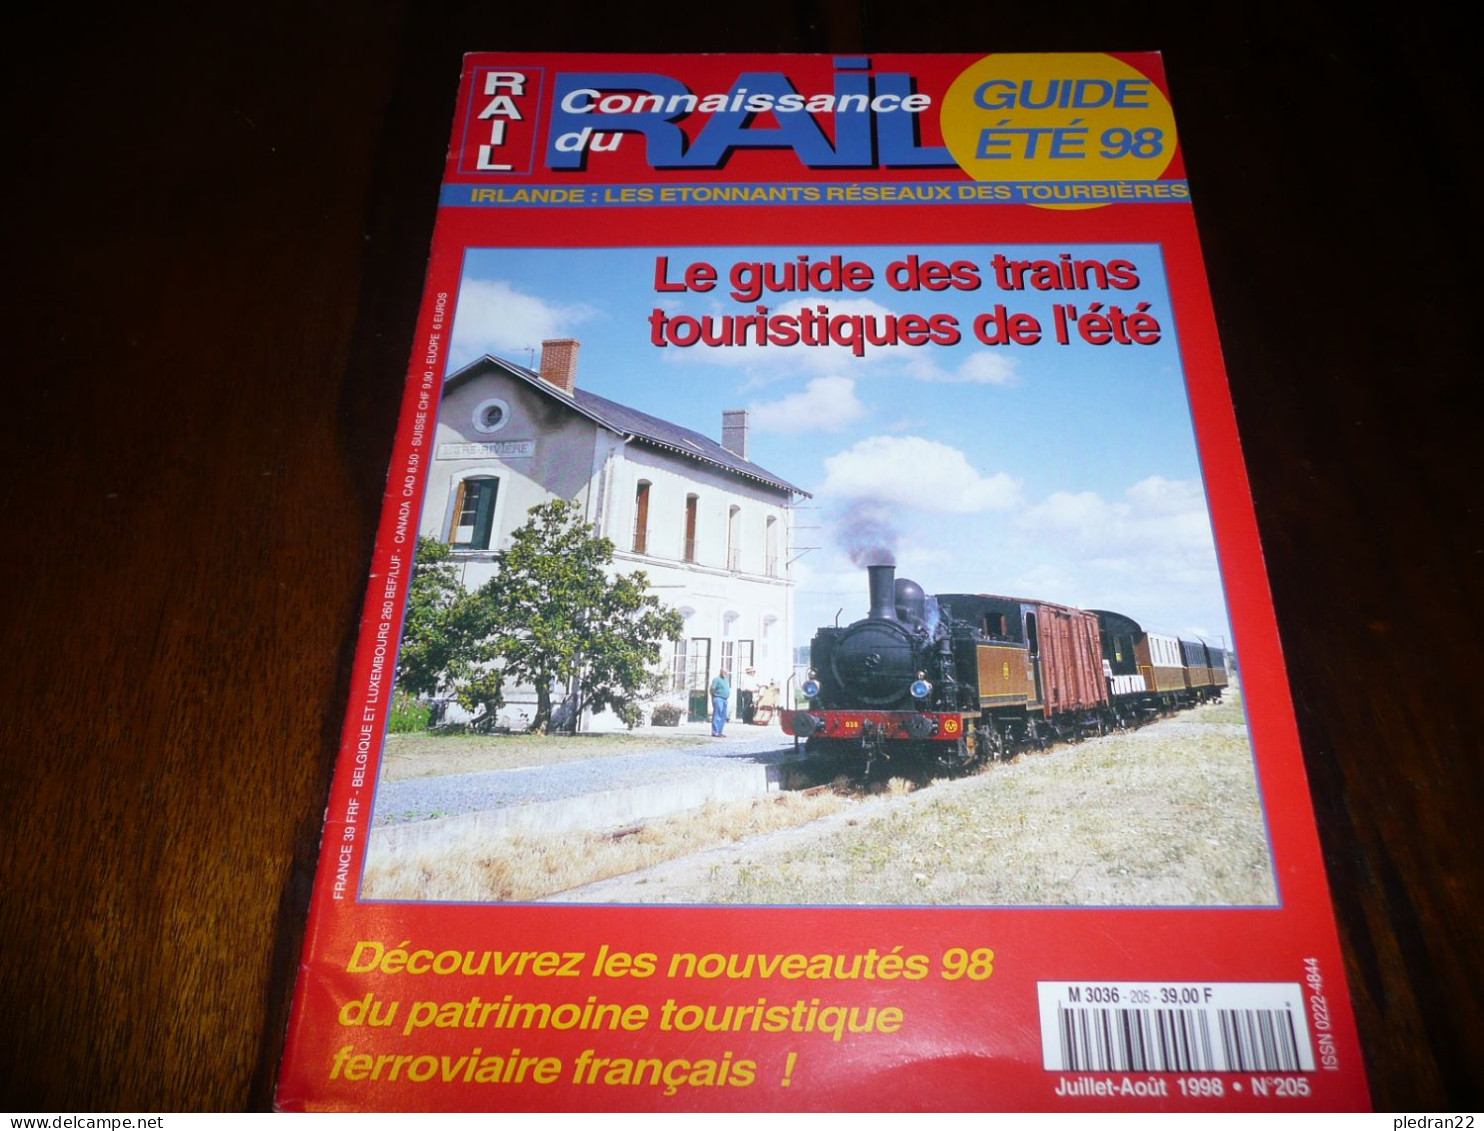 CHEMINS DE FER TRAIN REVUE CONNAISSANCE DU RAIL N° 205 GUIDE ETE JUILLET AOUT 1998 IRLANDE RESEAU DES TOURBIERES - Trains